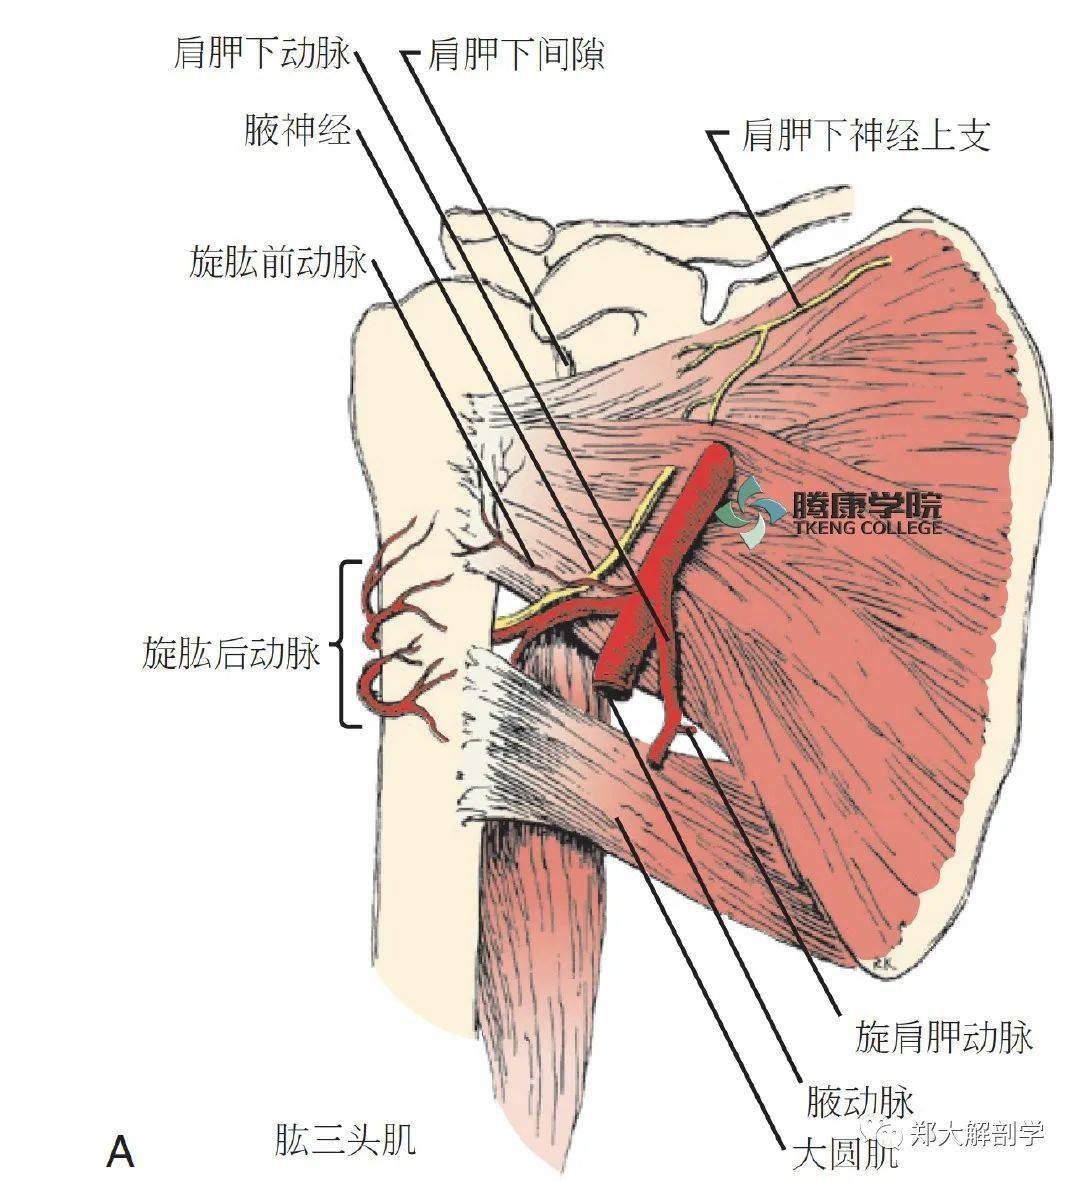 肩胛下肌位于喙突,肩胛下凹或肩胛下滑囊的下方,腋神经和旋肱后动脉